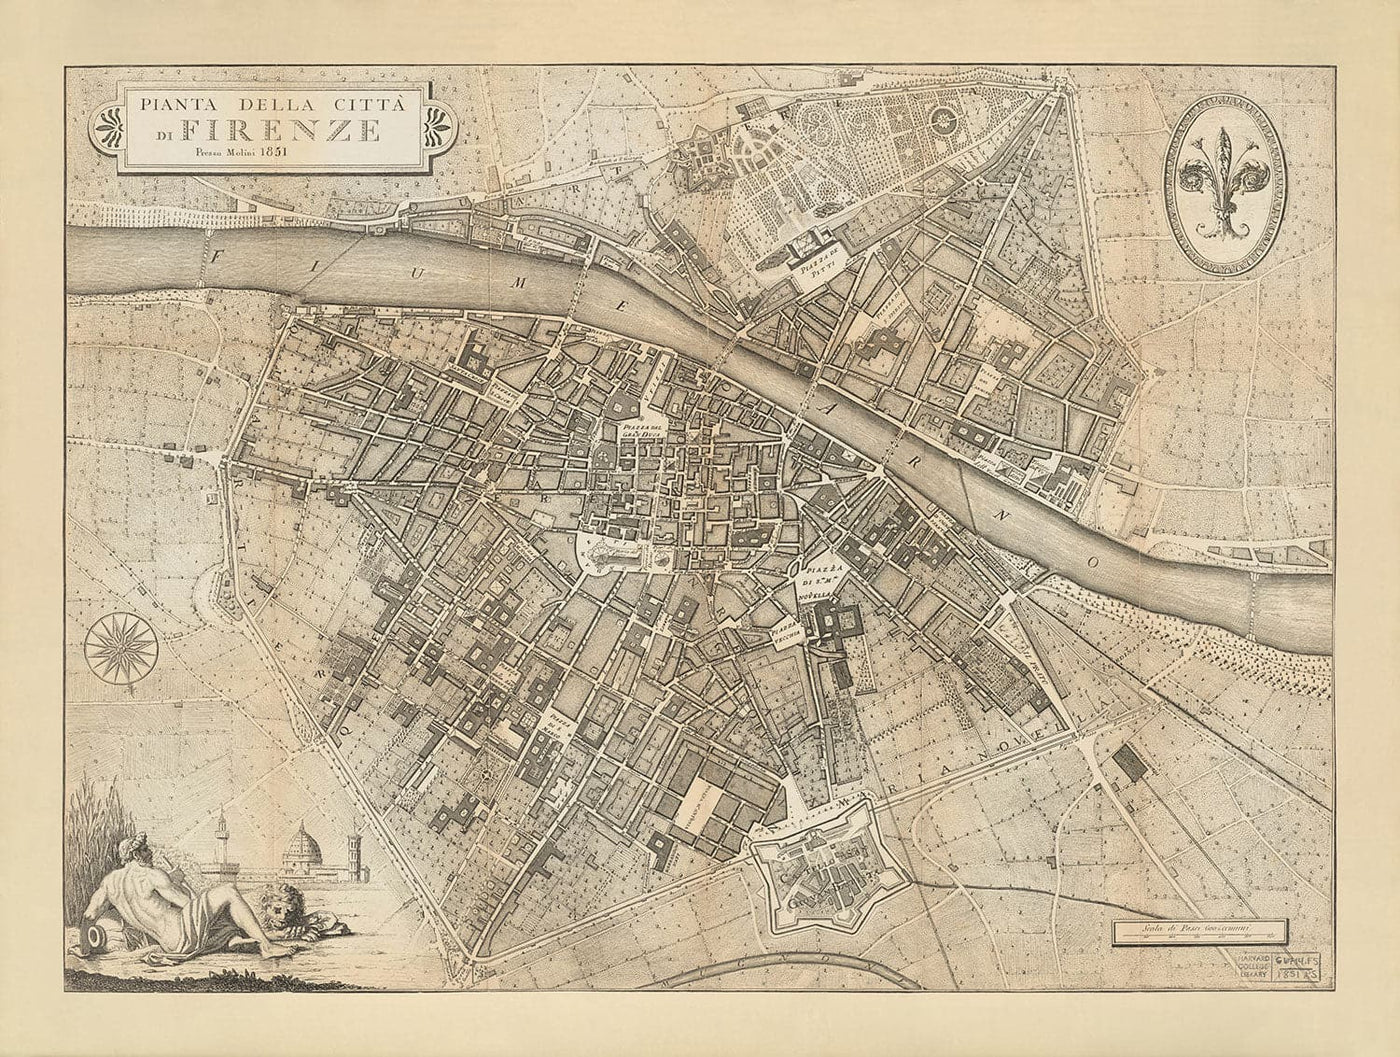 Old Map of Florence, Firenze, 1847 by Molini & Ruggieri - Uffizi, Santa Croce, Santo Spirito, Duomo, Piazzas, Palazzos, Ponte Vecchio